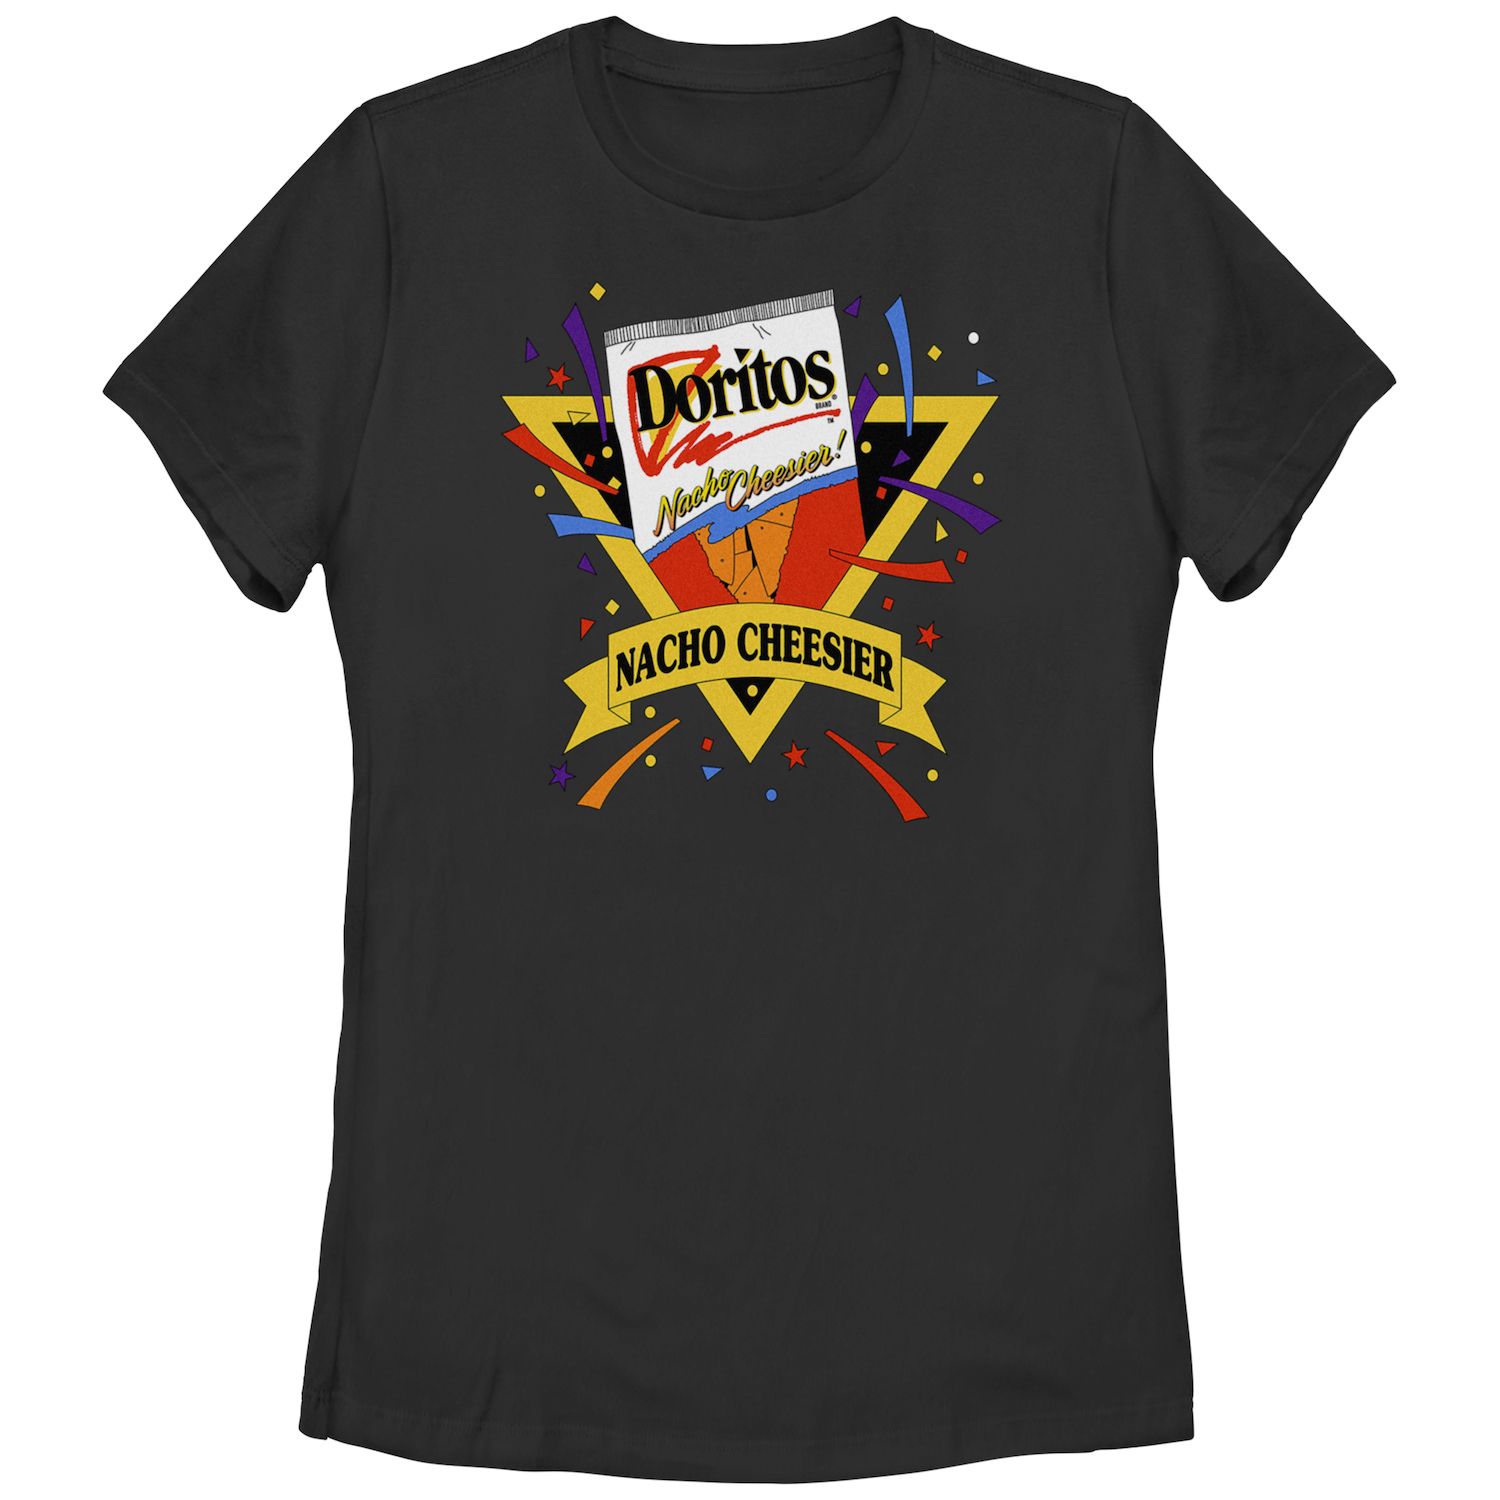 Детская футболка Doritos Nacho Cheesier с винтажным графическим логотипом Doritos